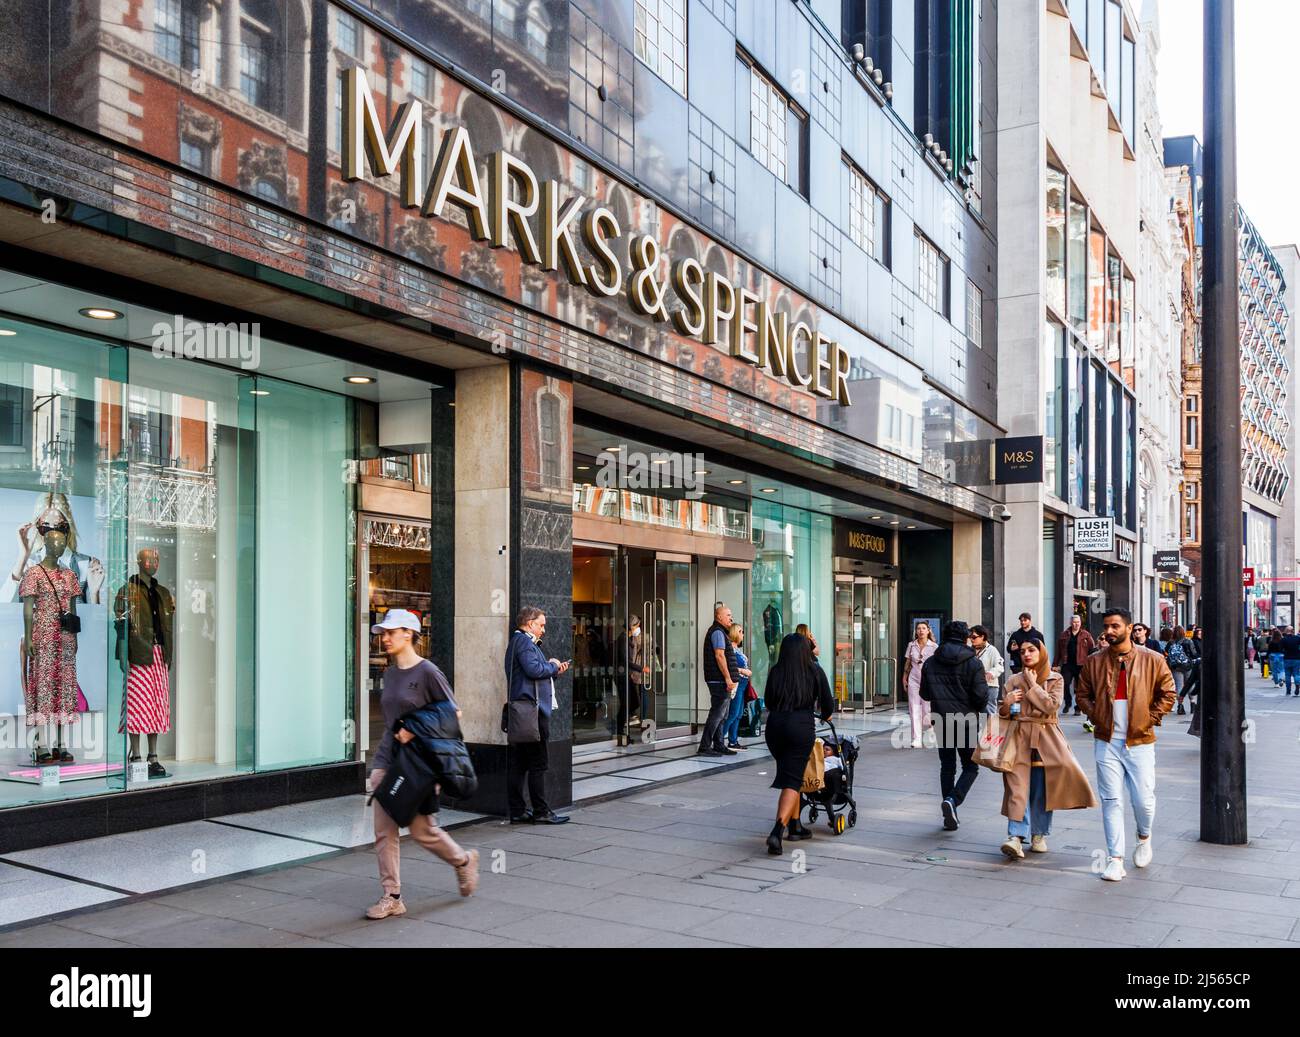 Eine Filiale von Marks and Spencer, dem Bekleidungs- und Lebensmittelgeschäft, in der Oxford Street, London, Großbritannien Stockfoto